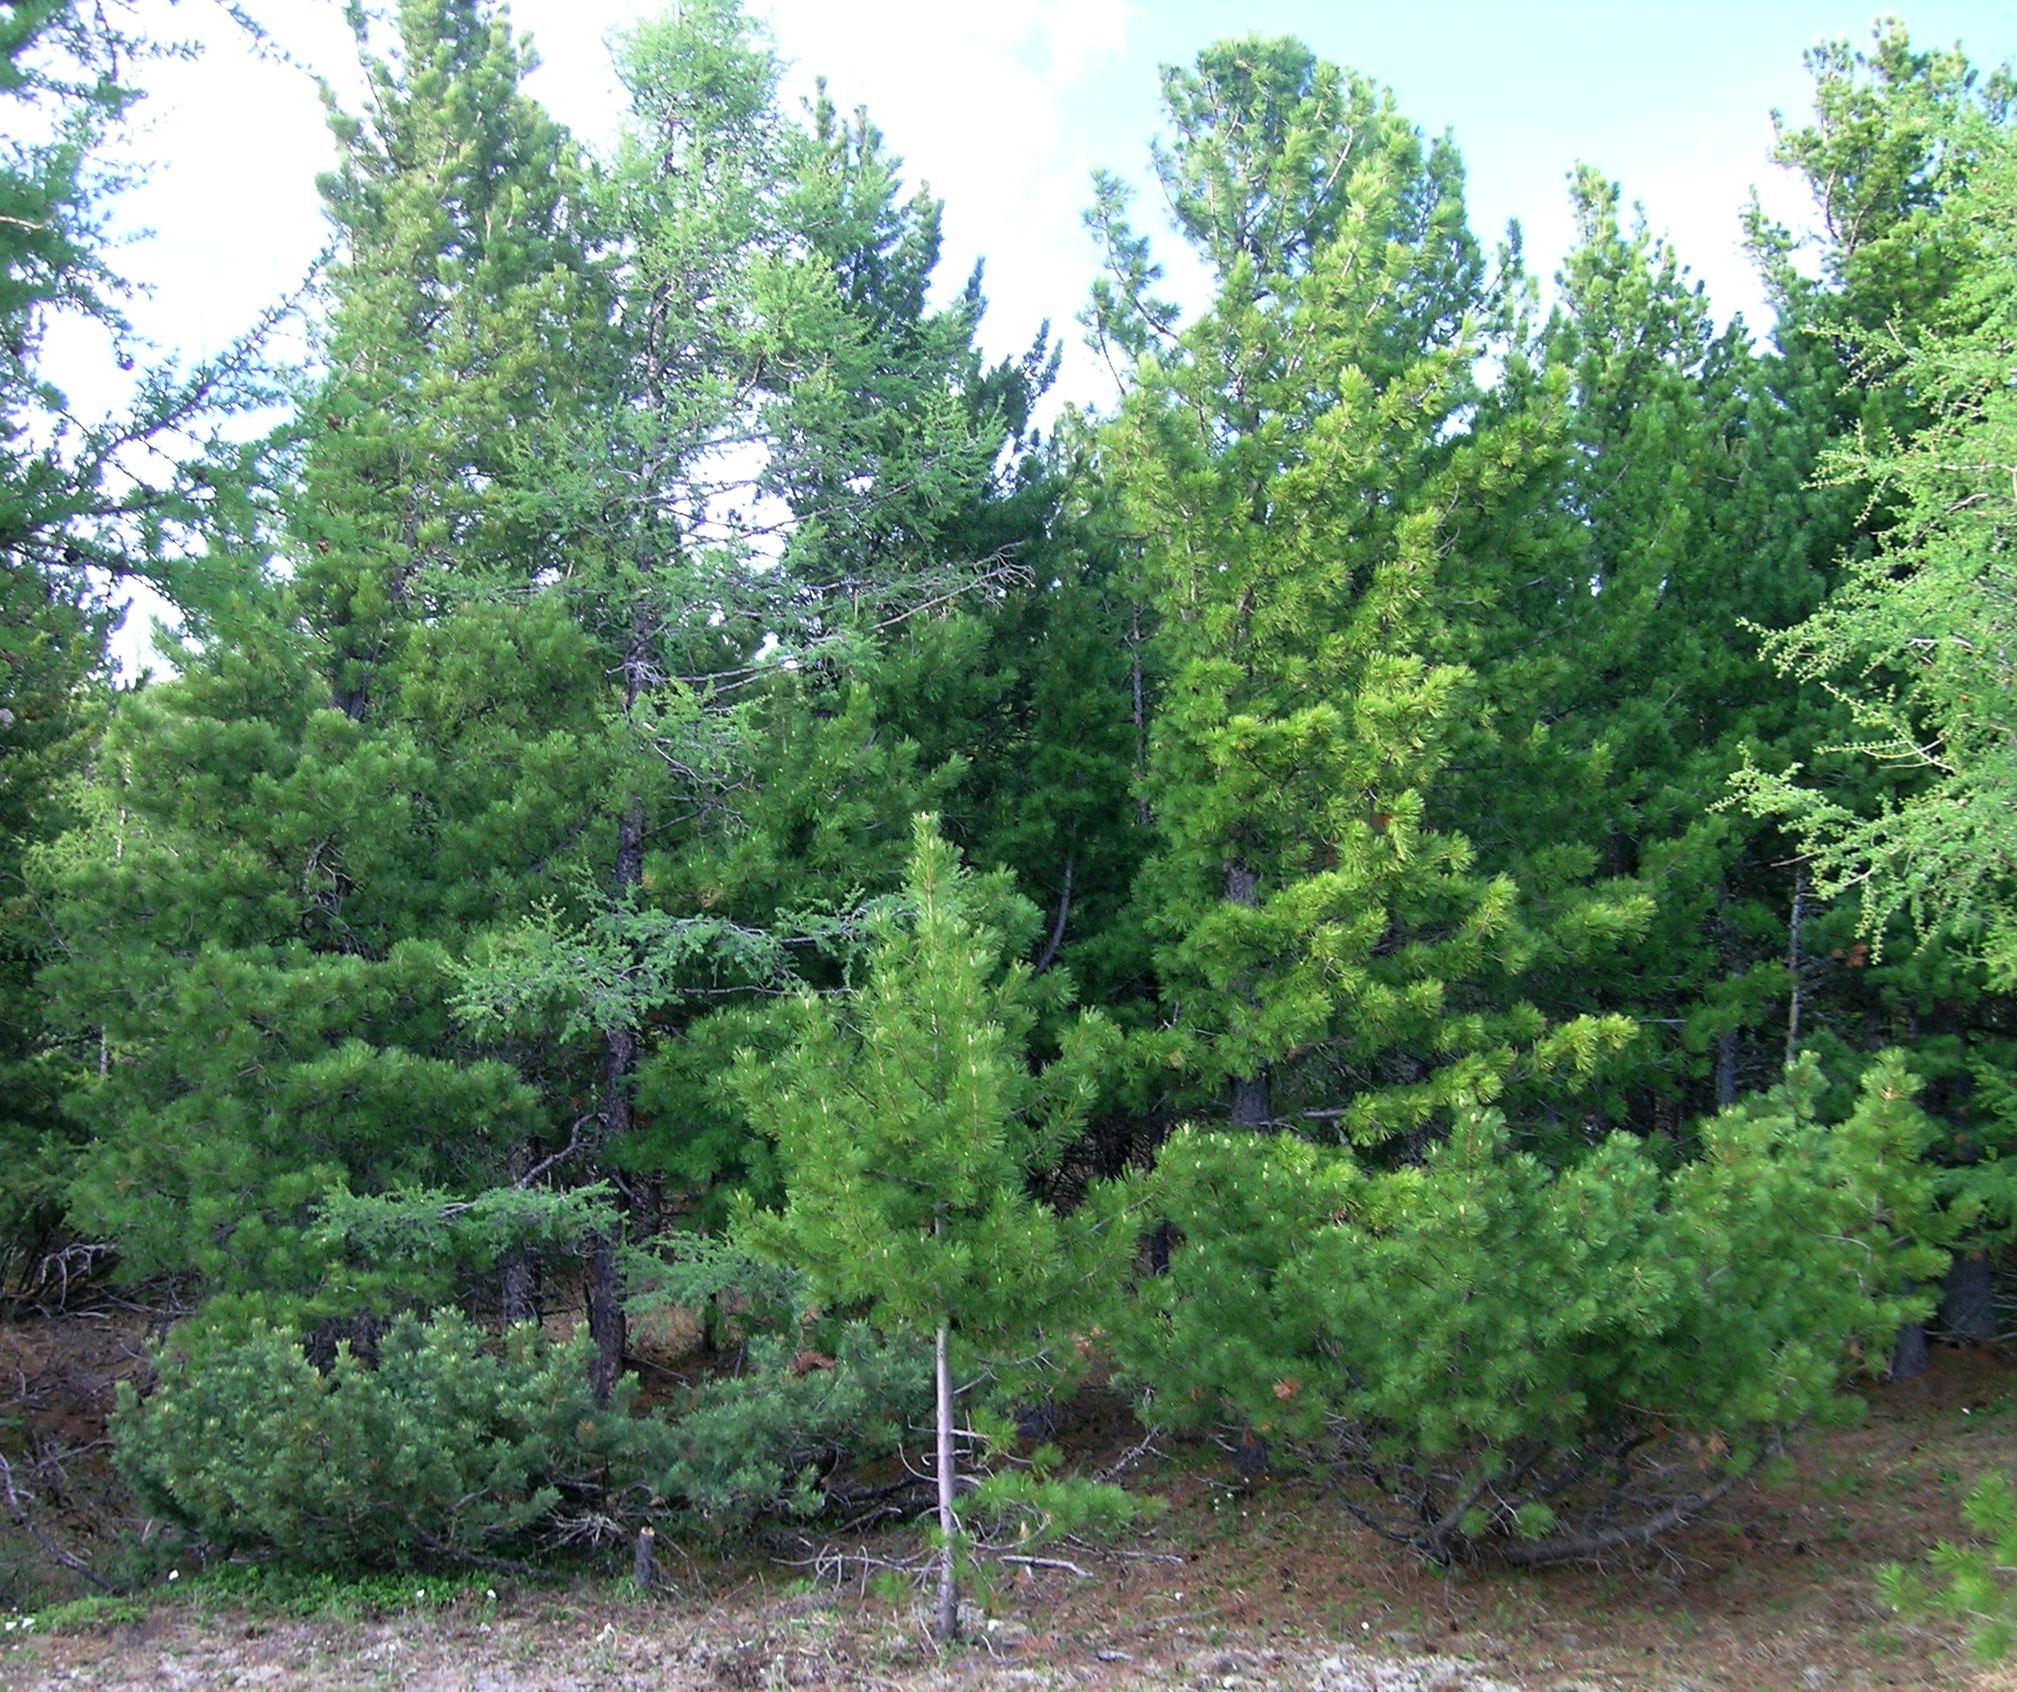 В Забайкалье нередко встречаются естественные гибриды кедра сибирского и кедрового стланика. На снимке слева кедровый стланик – стелющееся деревце с хвоей сизого цвета, в центре и на заднем фоне кедр сибирский – прямостоячее дерево с зеленой хвоей, справа их гибрид – полустелющееся деревце с хвоей промежуточного цвета. 